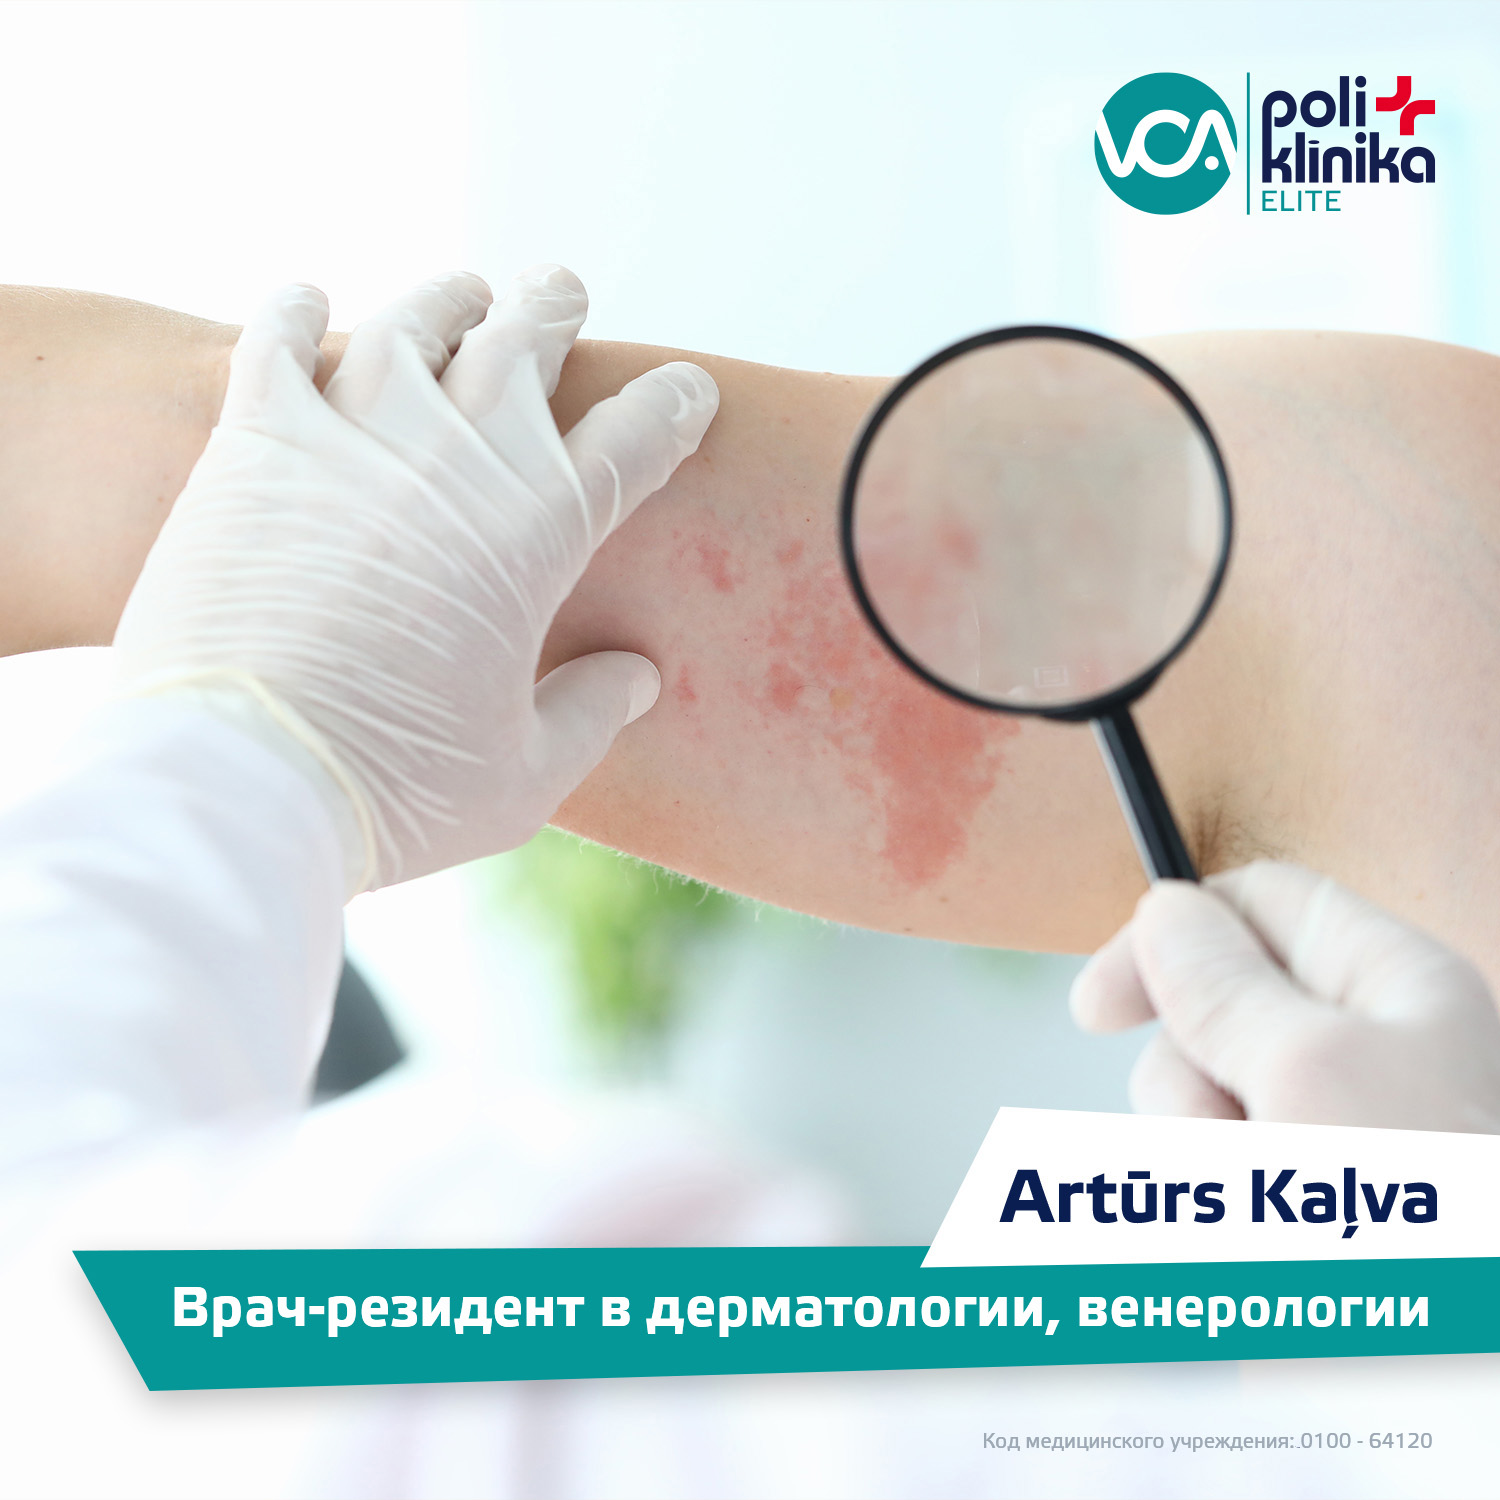 Врач-резидент в дерматологии, венерологии Artūrs Kaļve